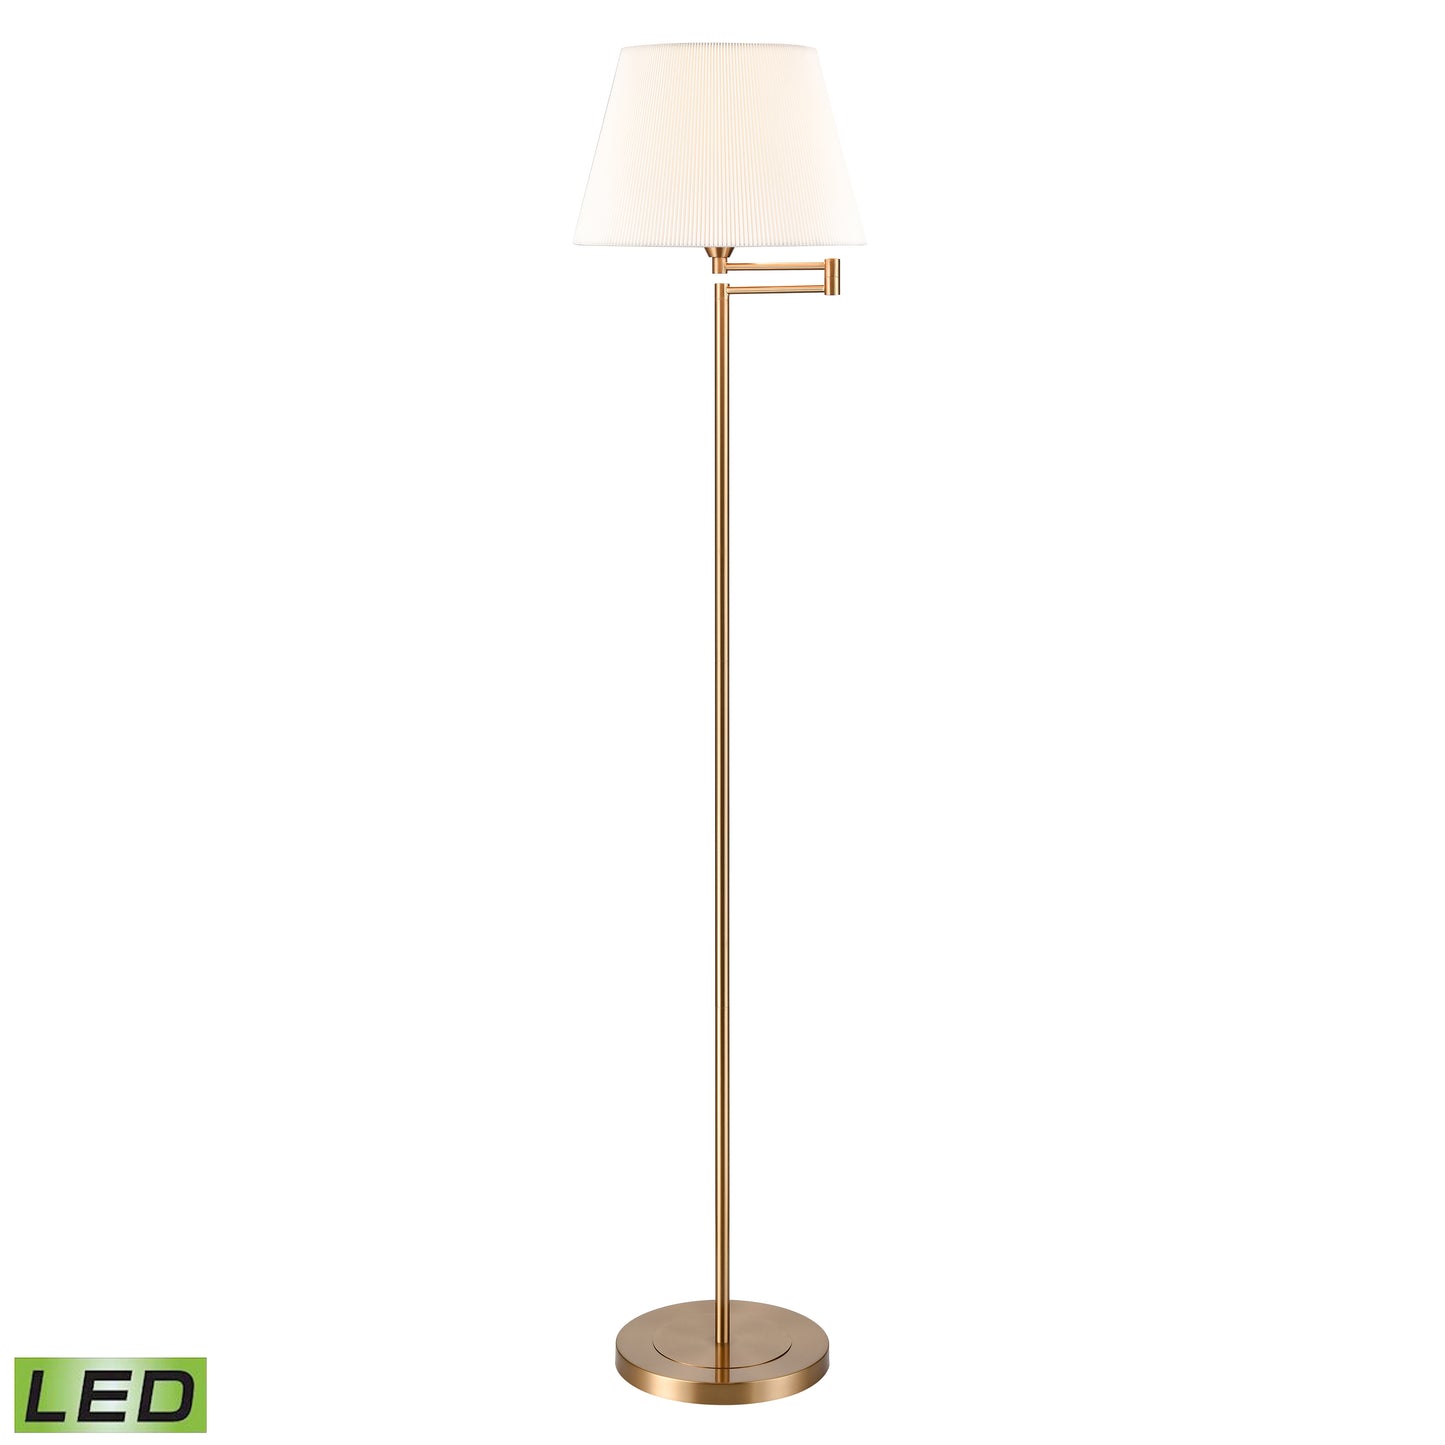 Elk Lighting Scope 65'' High 1-Light Floor Lamp - Aged Brass - Includes LED Bulb